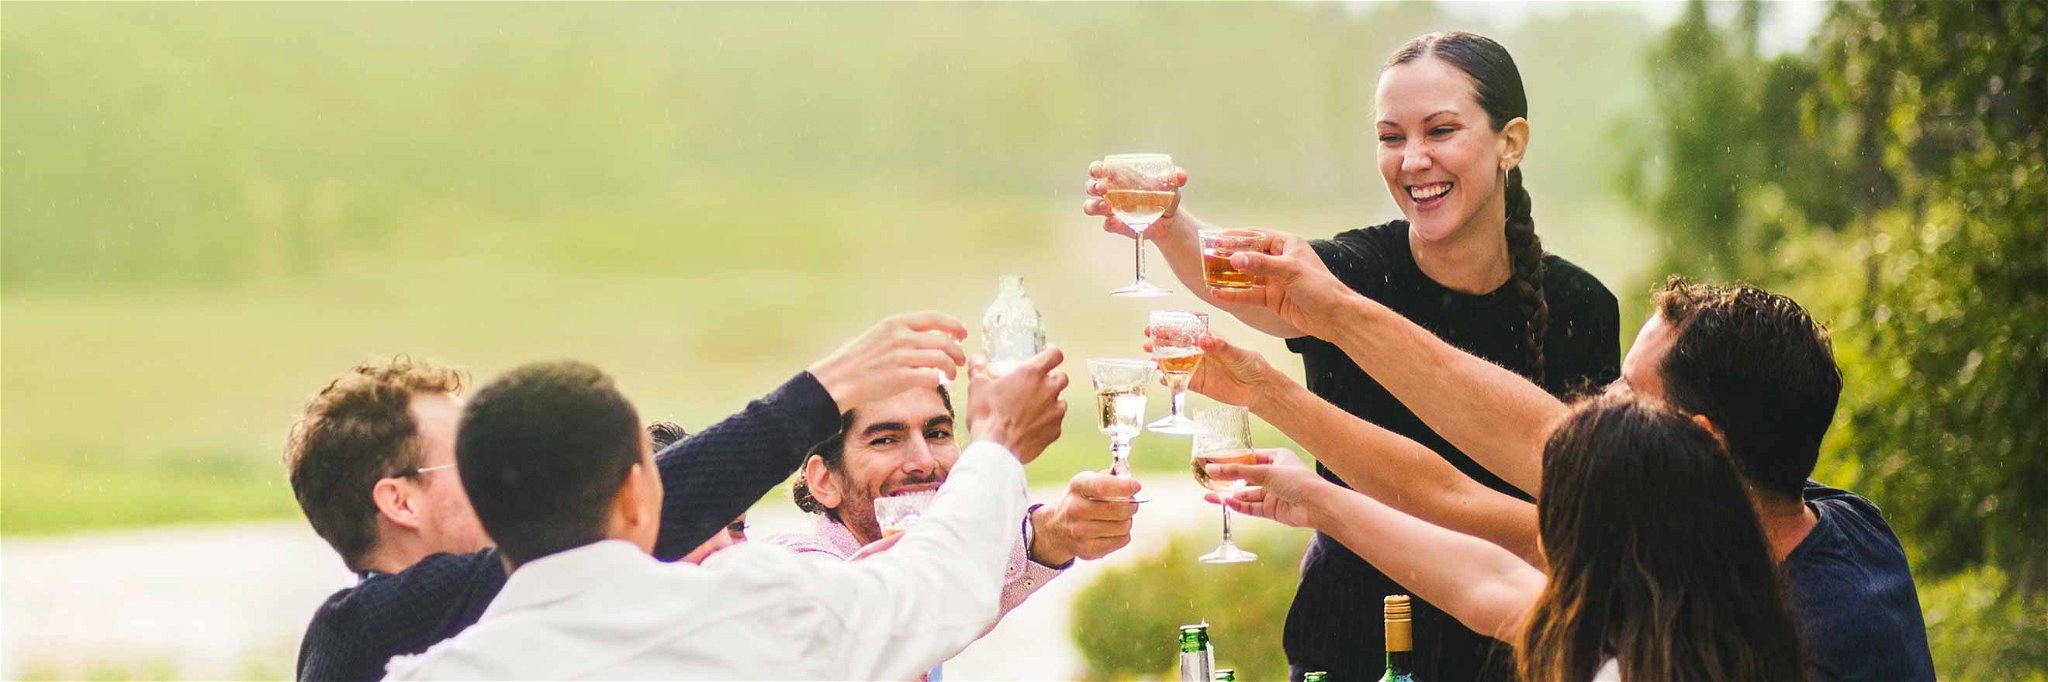 Der Sommer bietet viele Gelegenheiten, ein gutes Gläschen duftigen Weins mit seinen Freunden zu genießen.